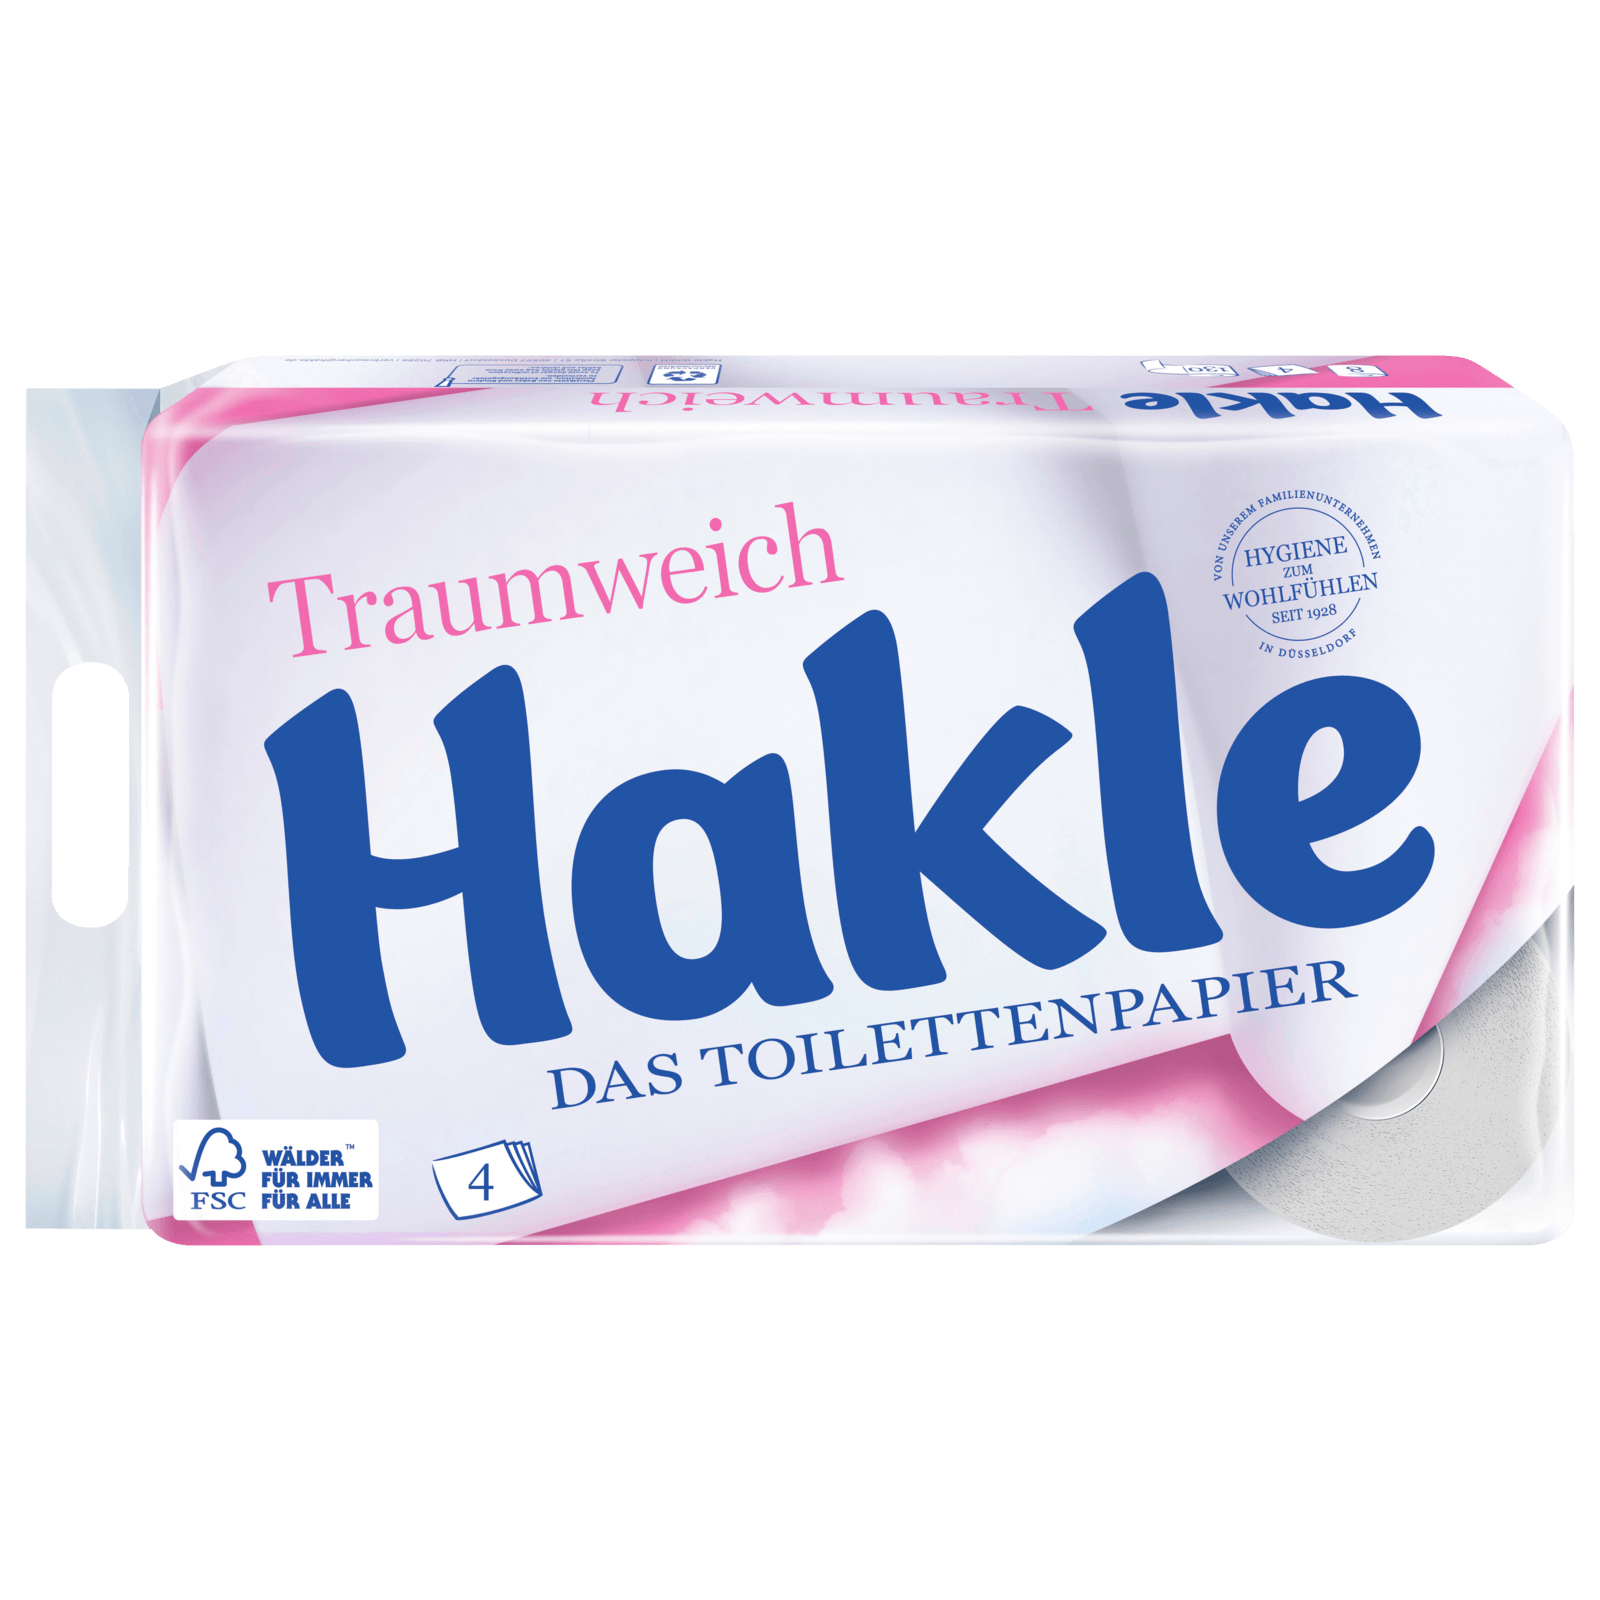 Hakle Traumweich Toilettenpapier 4-lagig online bei 8x130 bestellen! Blatt REWE